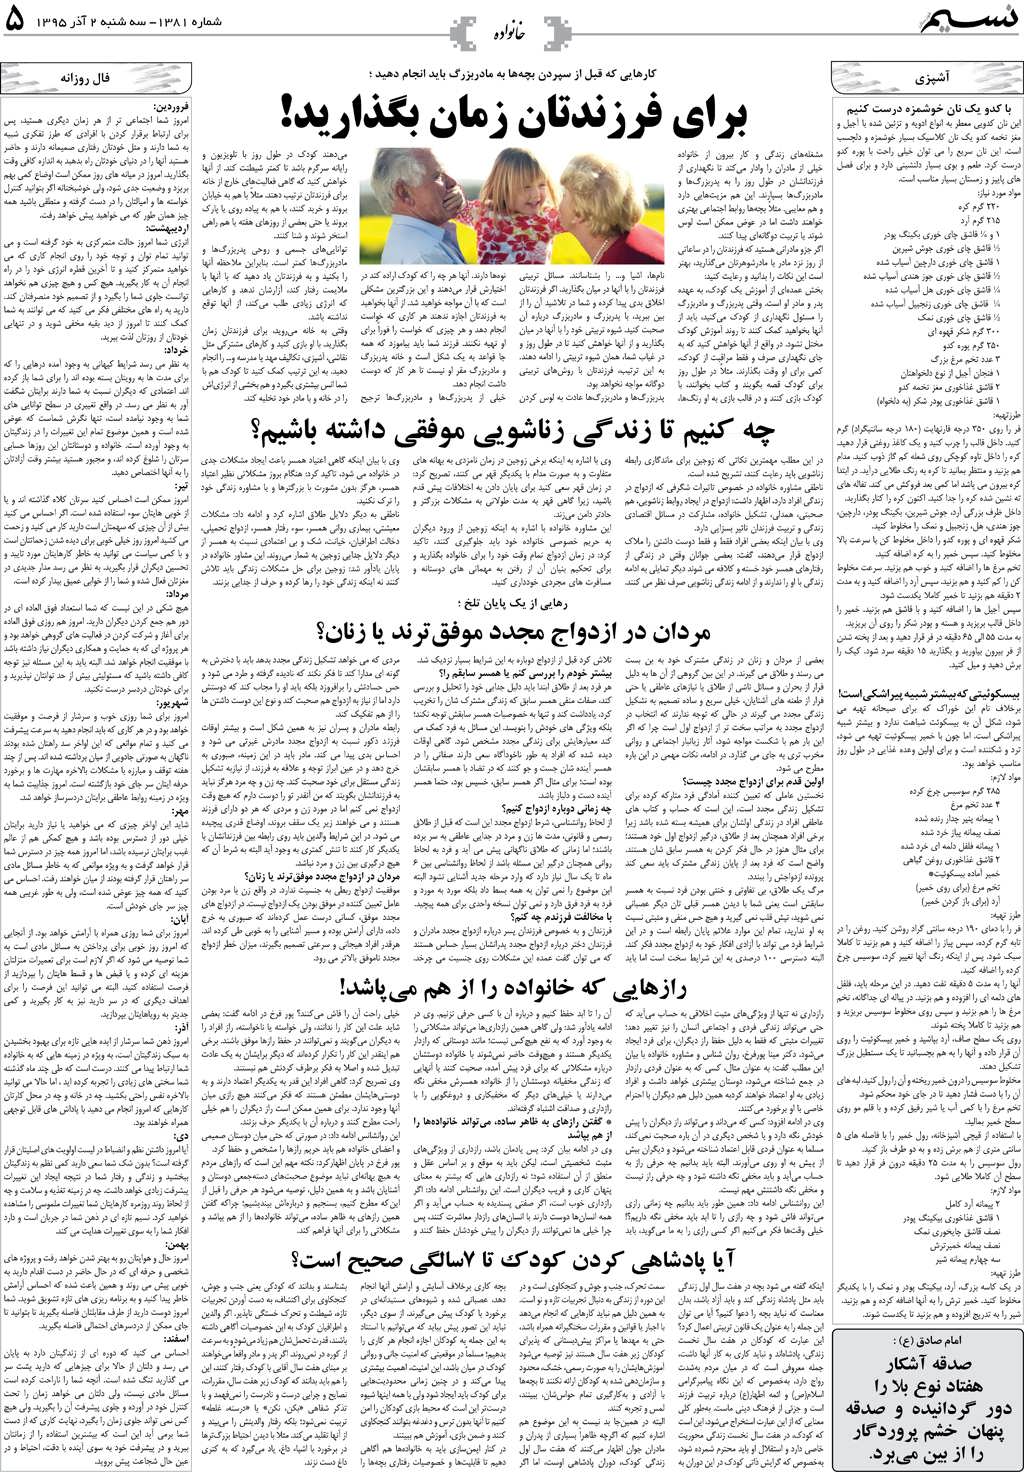 صفحه خانواده روزنامه نسیم شماره 1381